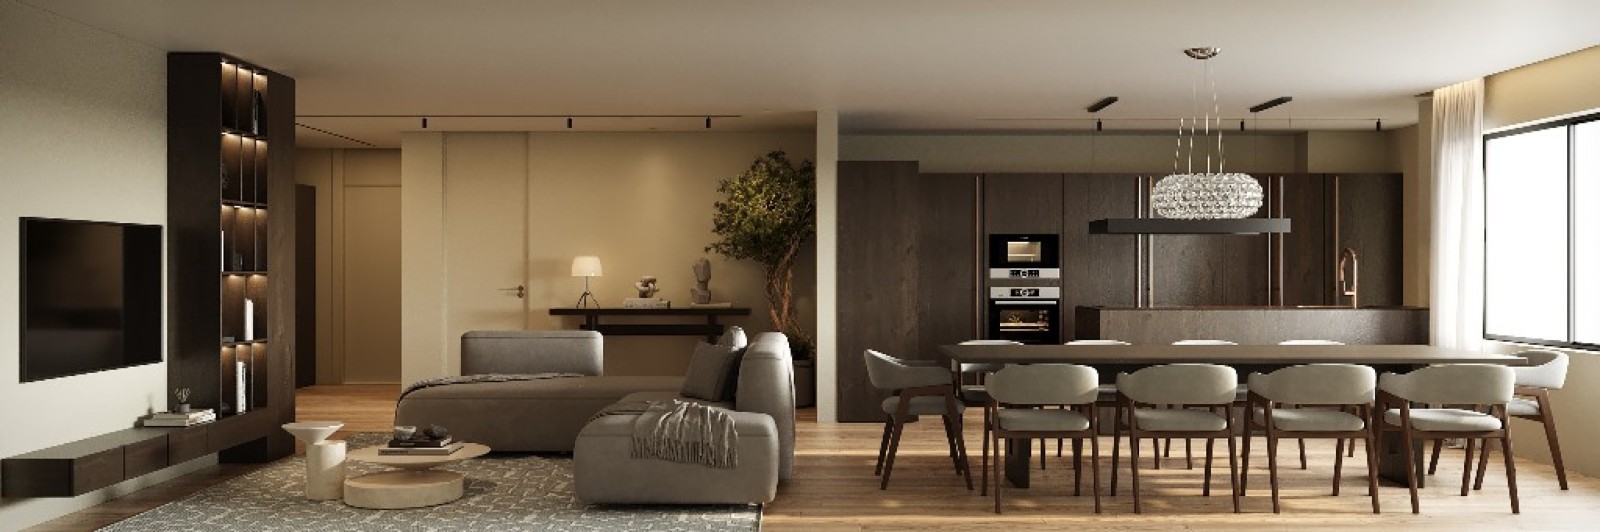 Penthouse de luxo T2, para venda, no Porto_250521